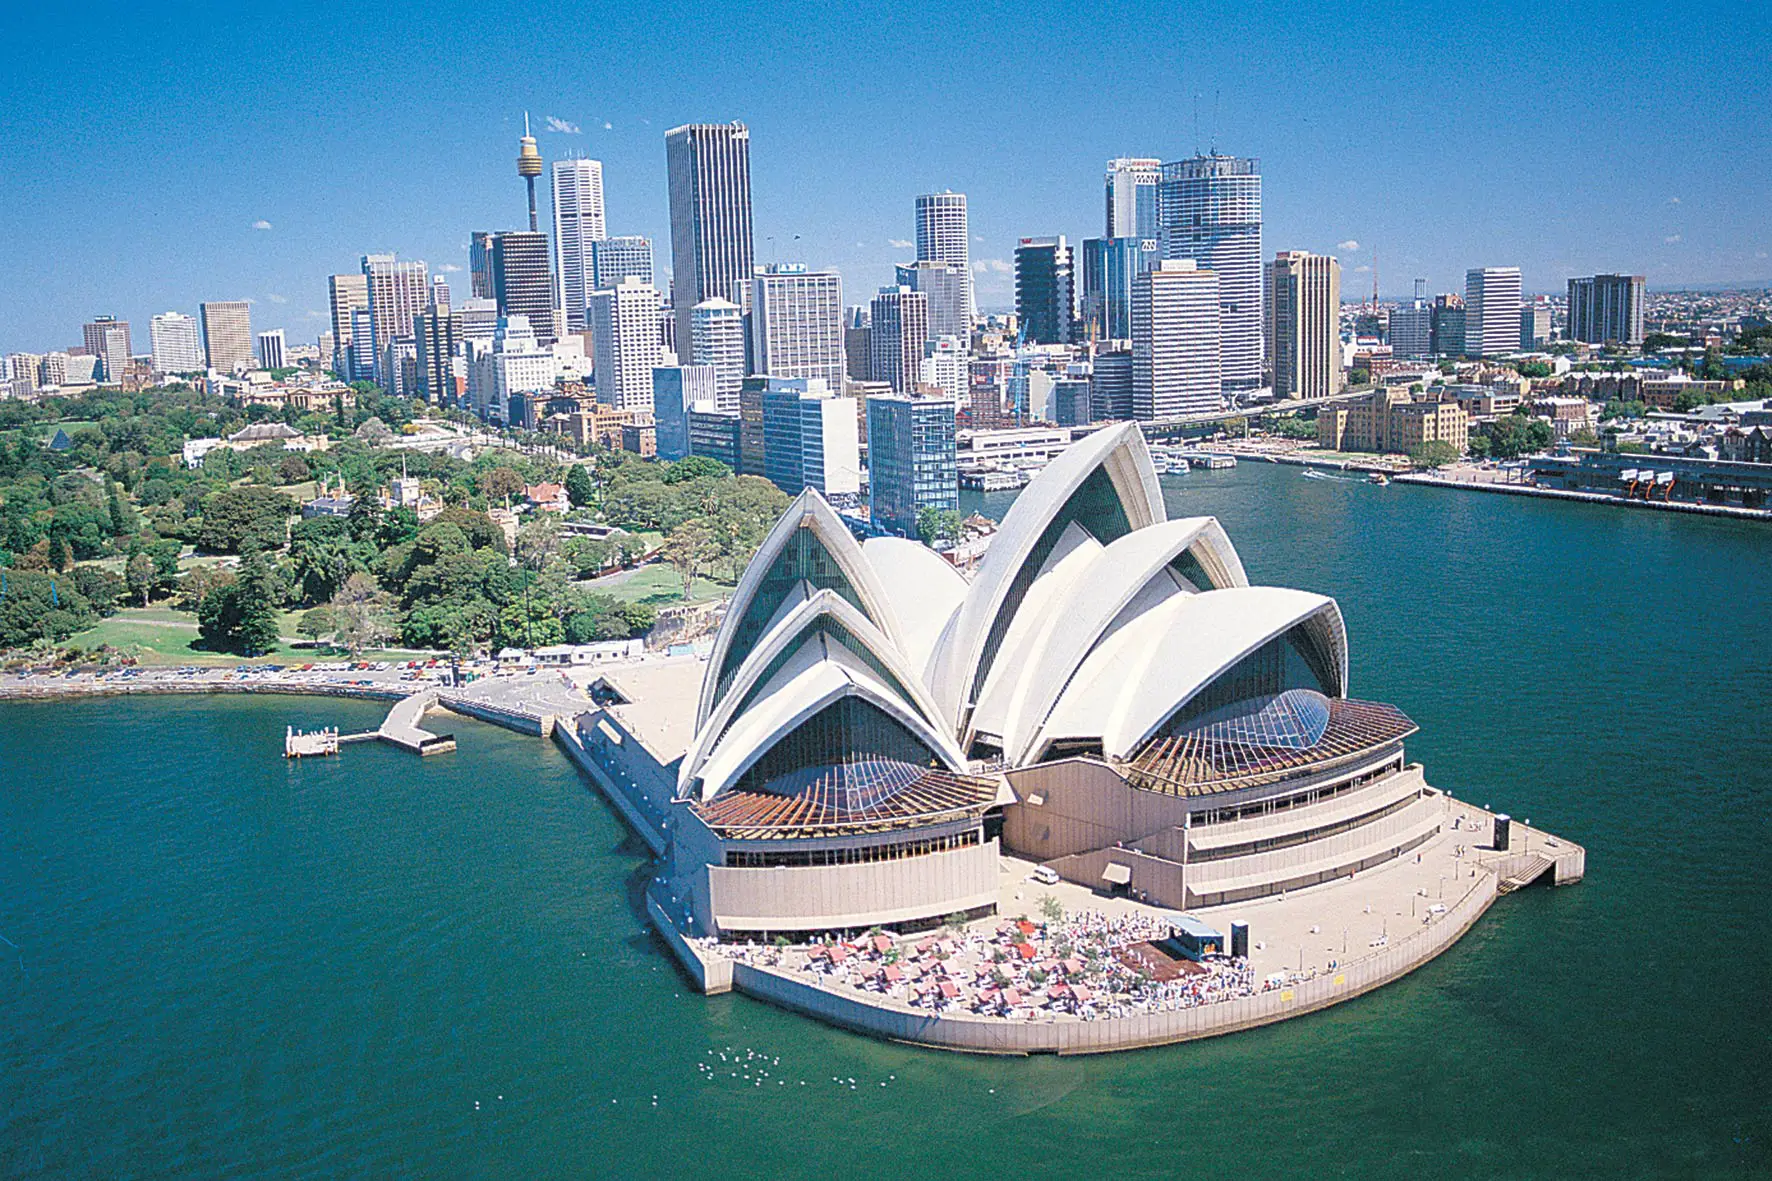 Obiective turistice in Australia. 10 locuri pe care sa le vezi in tara capitanului James Cook